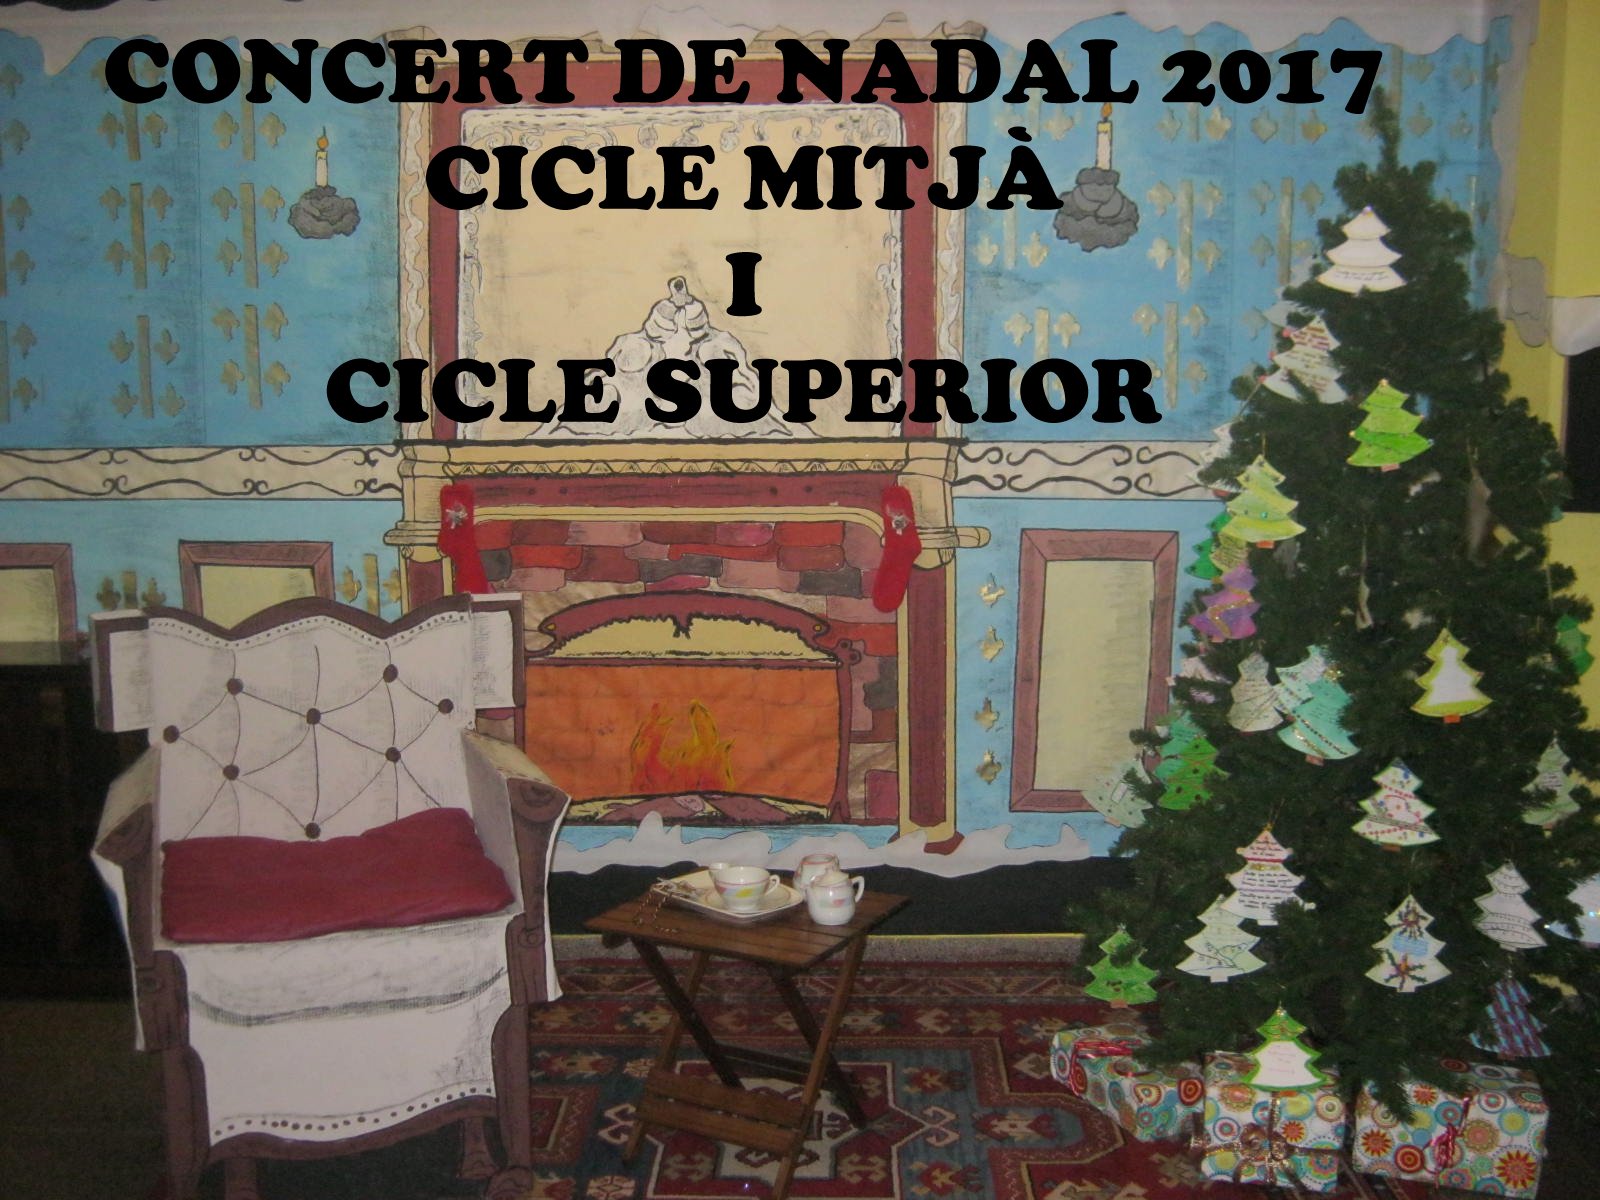 Concert de Nadal 2017. Cicle mitjà i superior